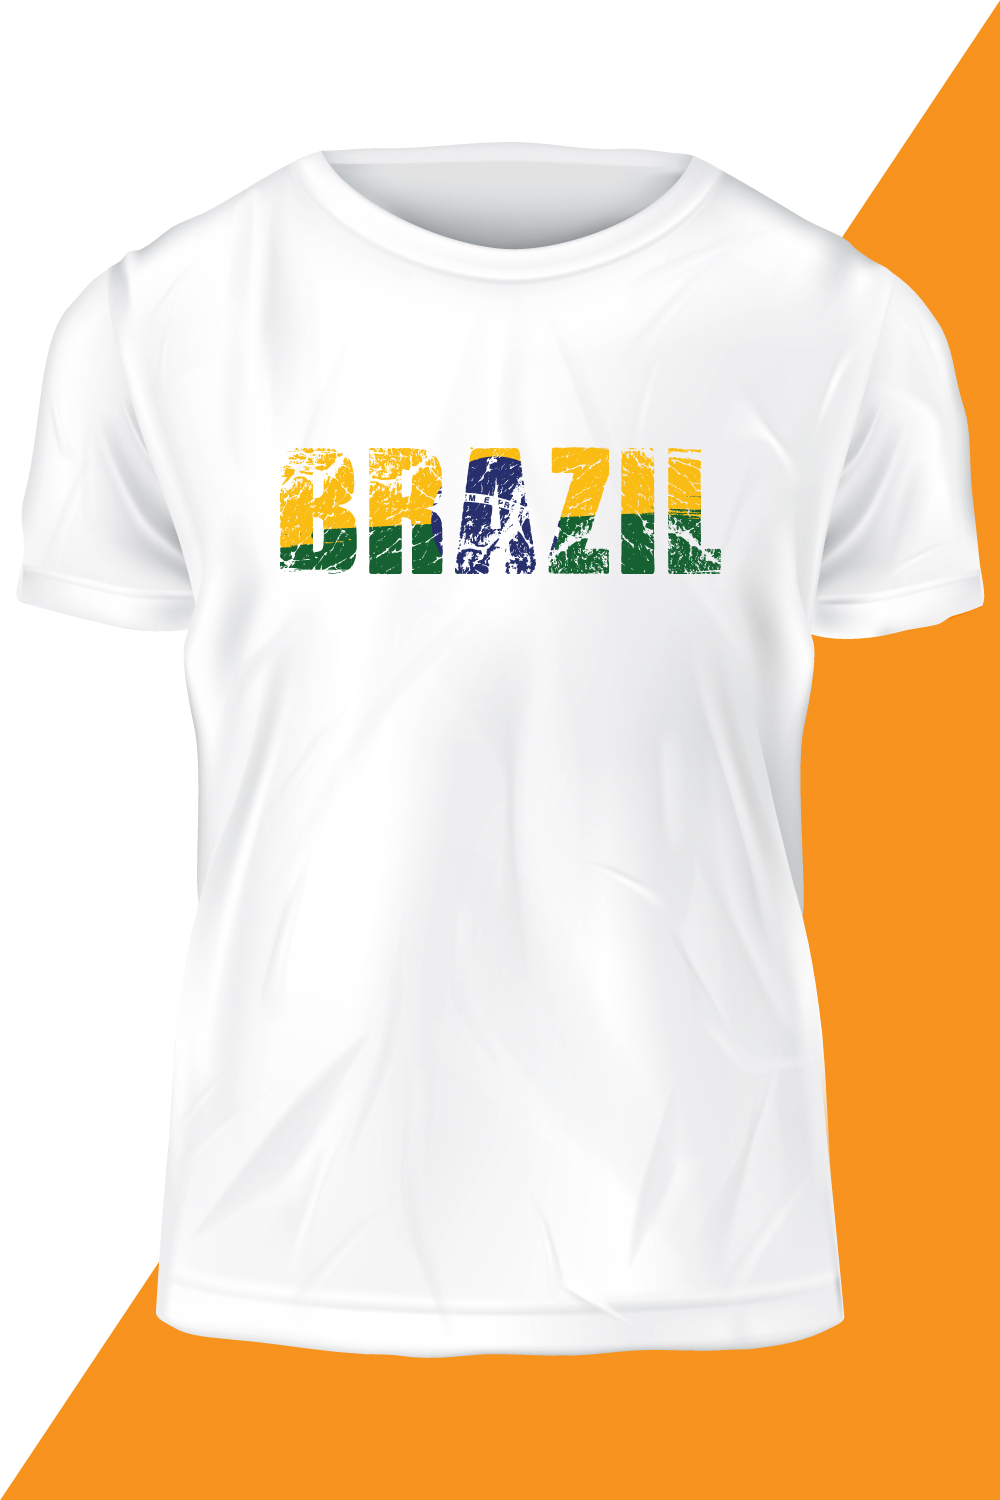 Brazil Flag T-shirt Vector Template Design pinterest image.